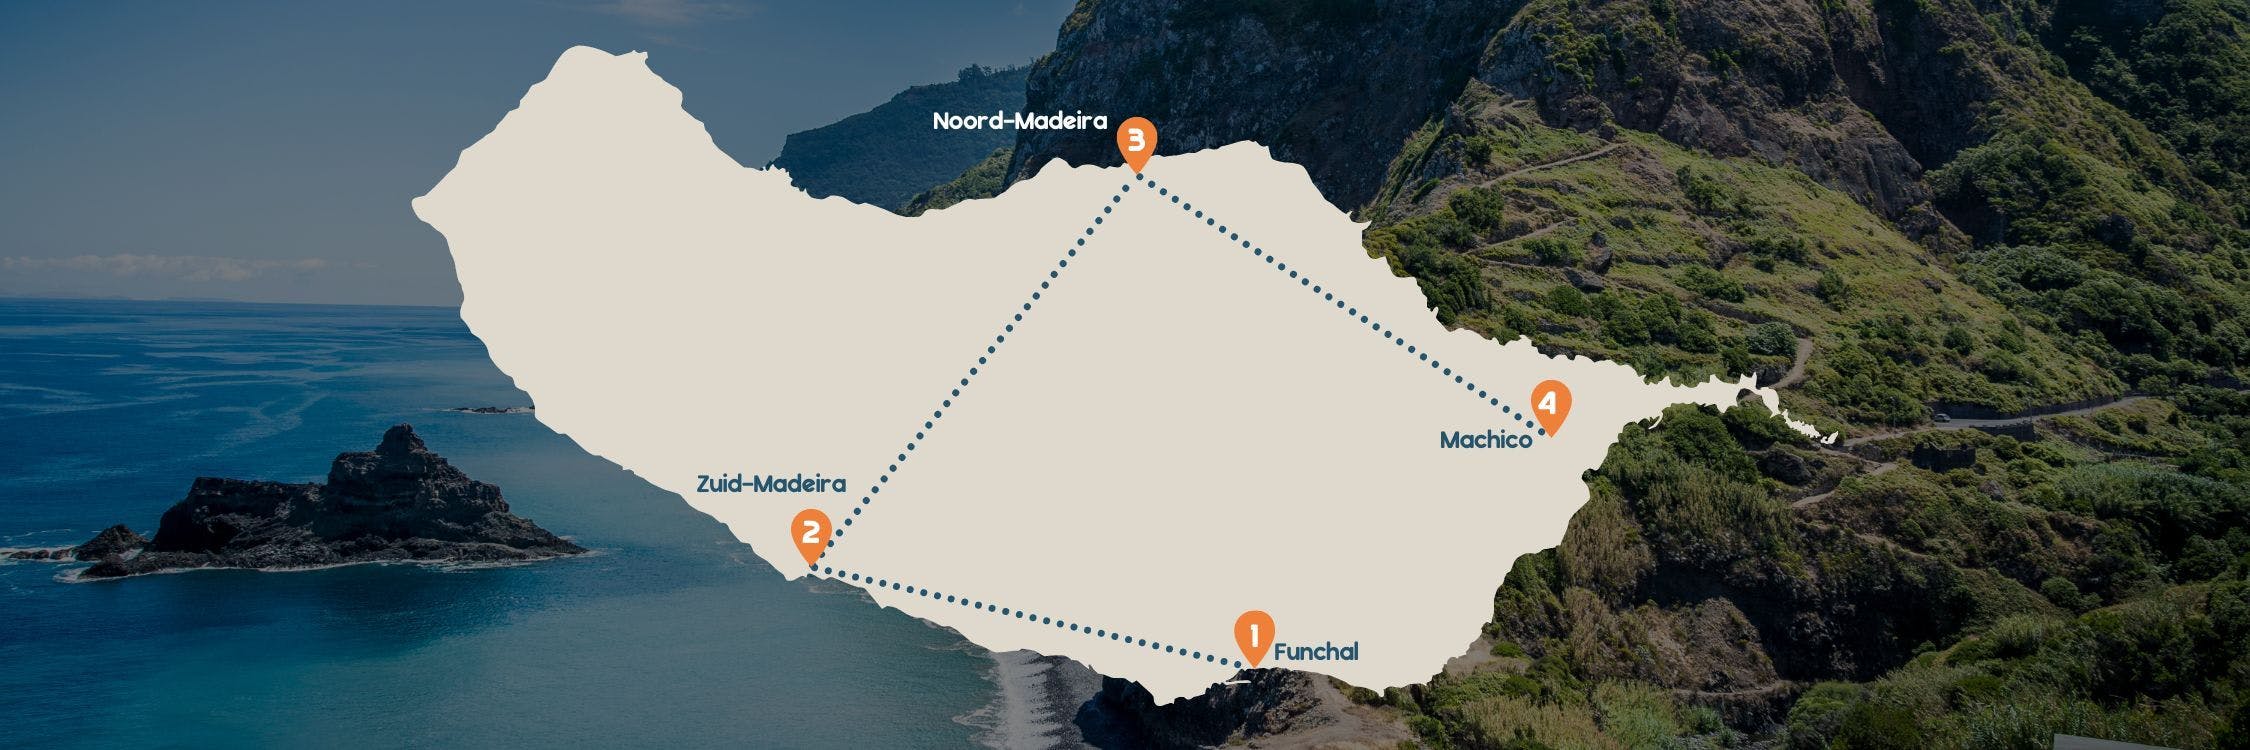 Routekaart Madeira RR1 desktop